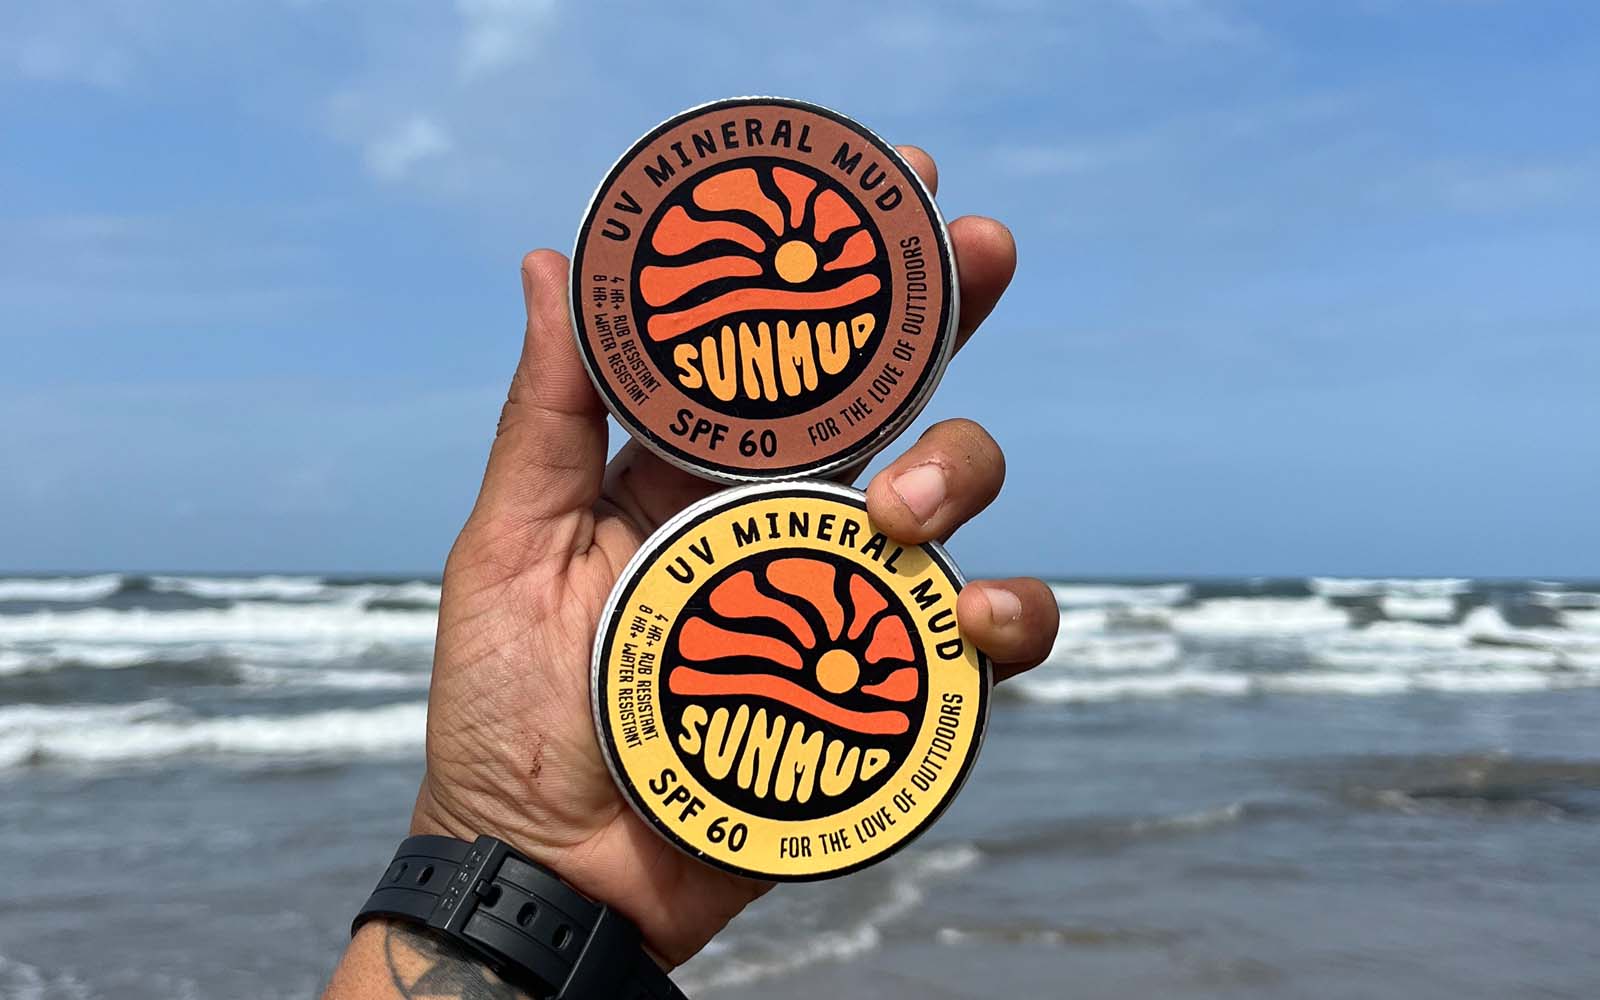 Sunmud cans photo on the beach